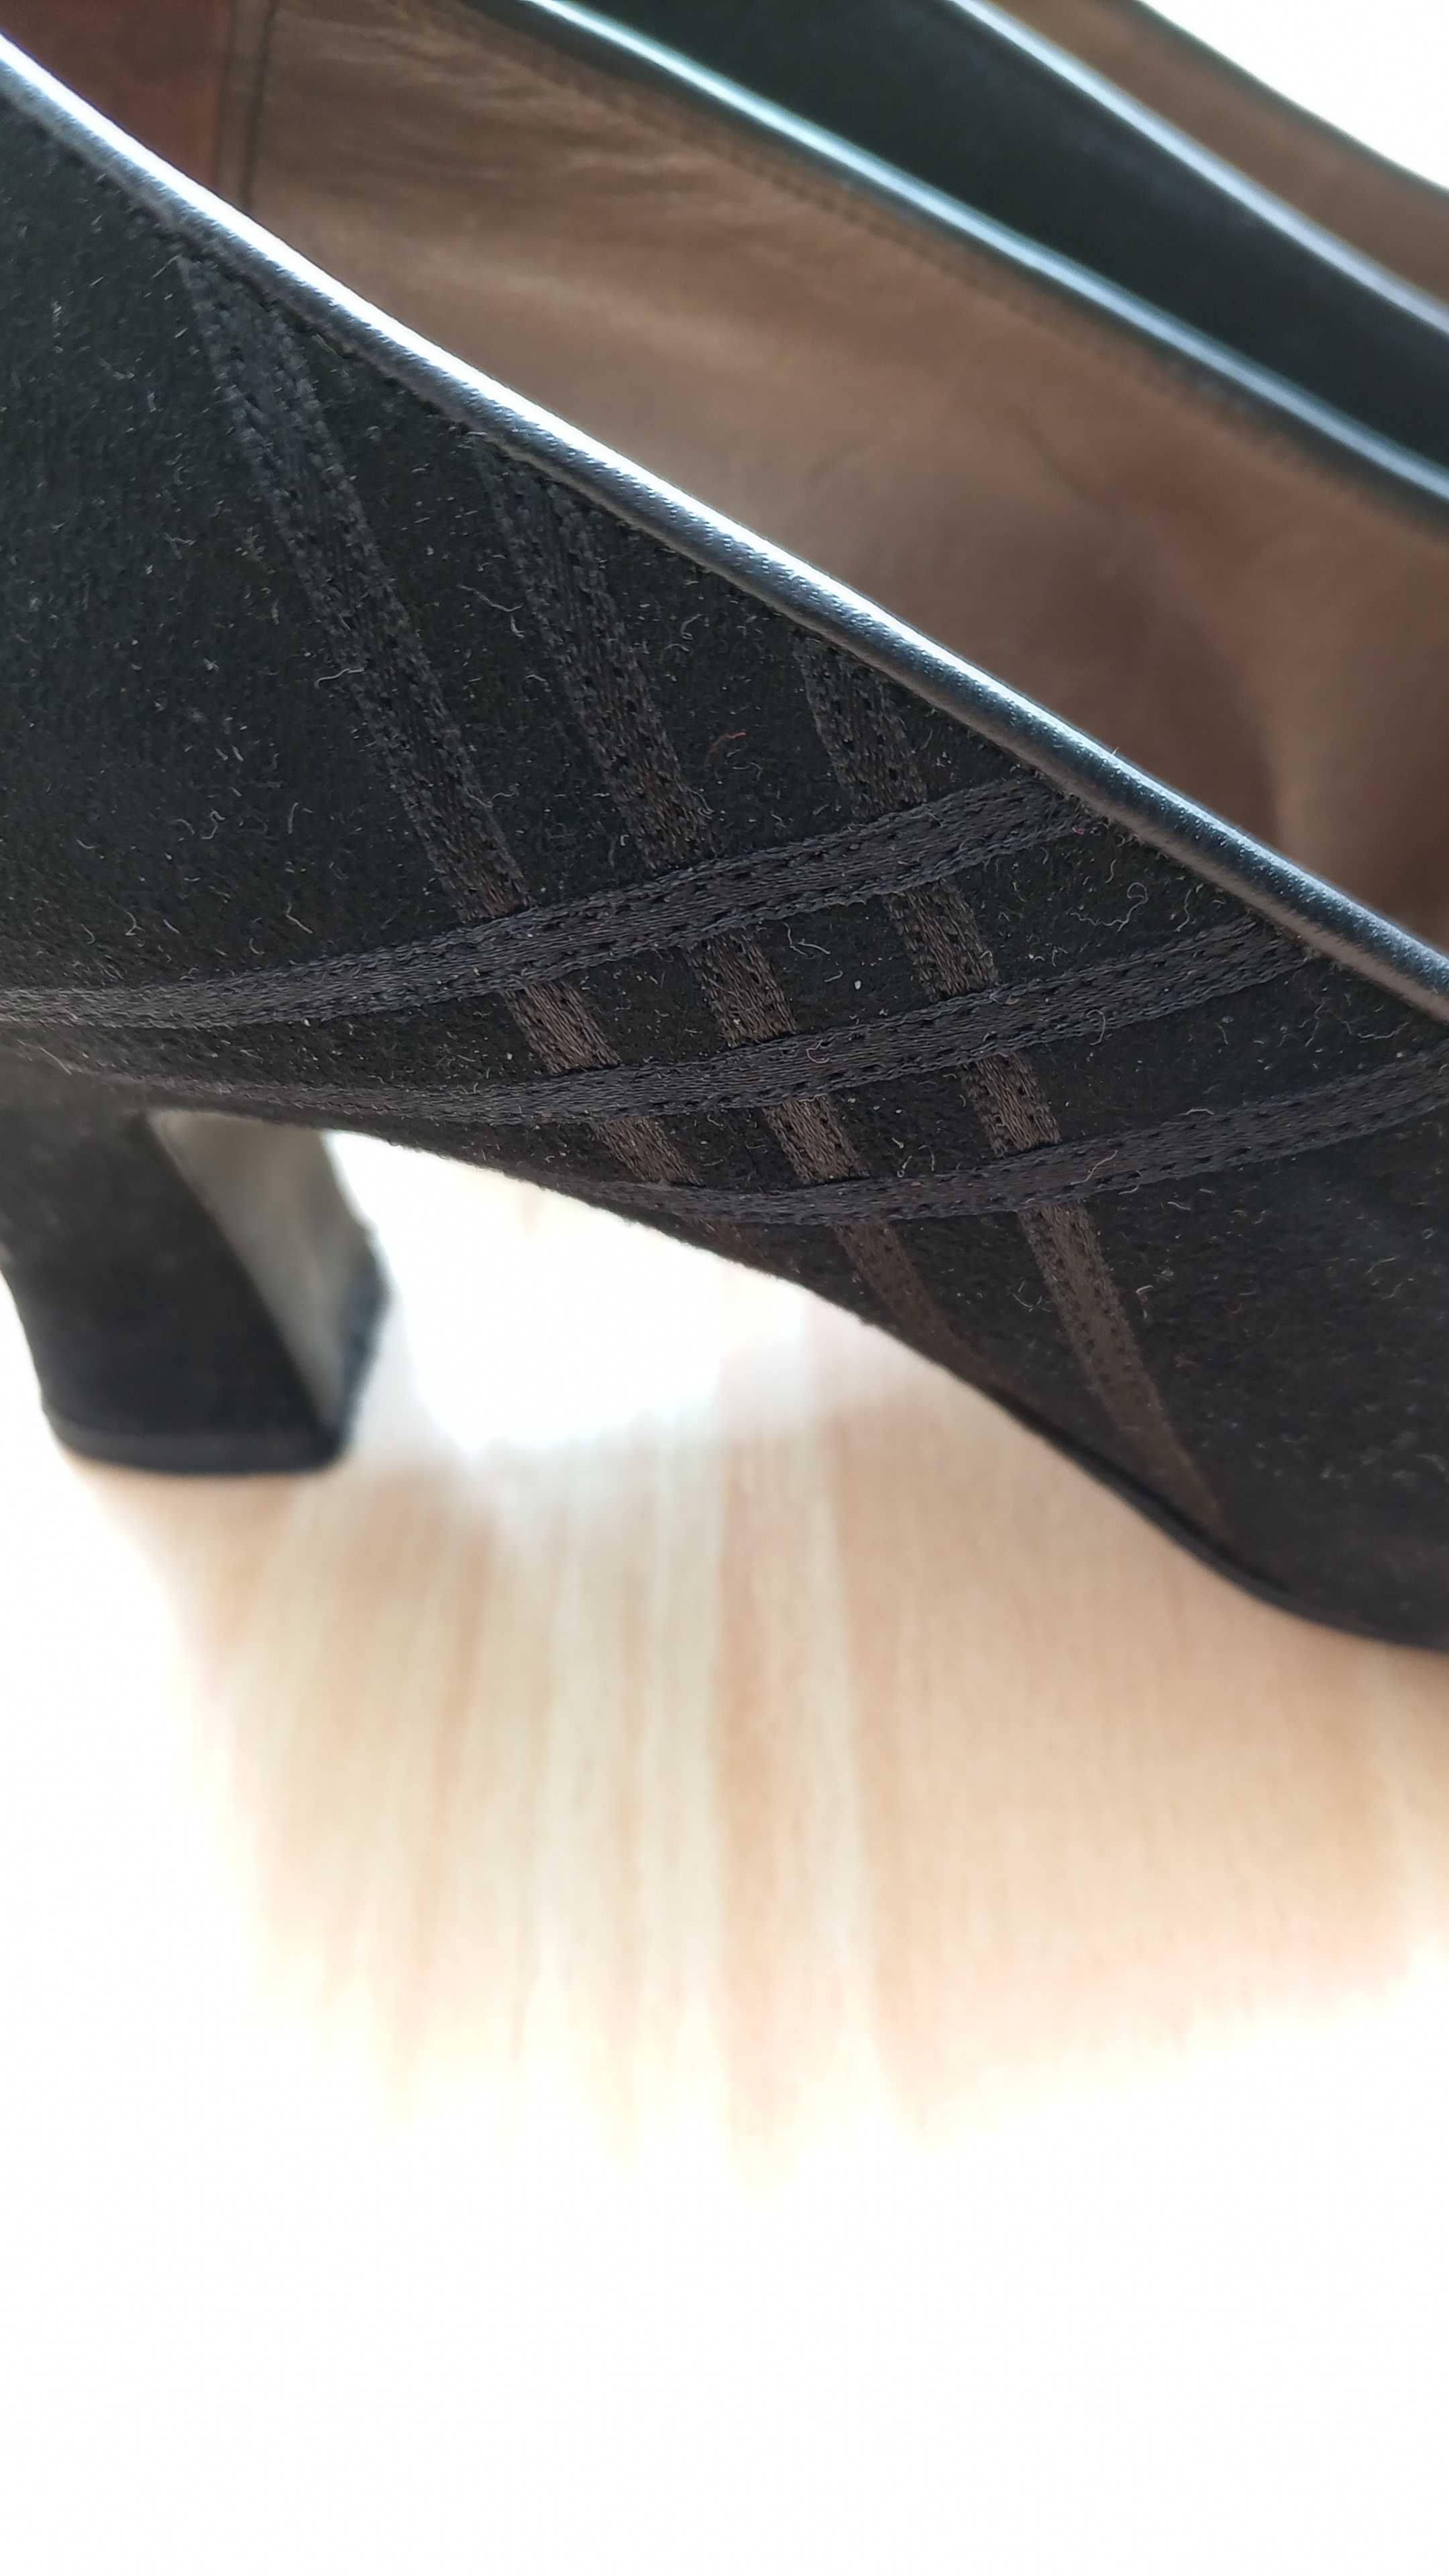 Sapatos pretos Camurça salto 7 cm Tamanho 36